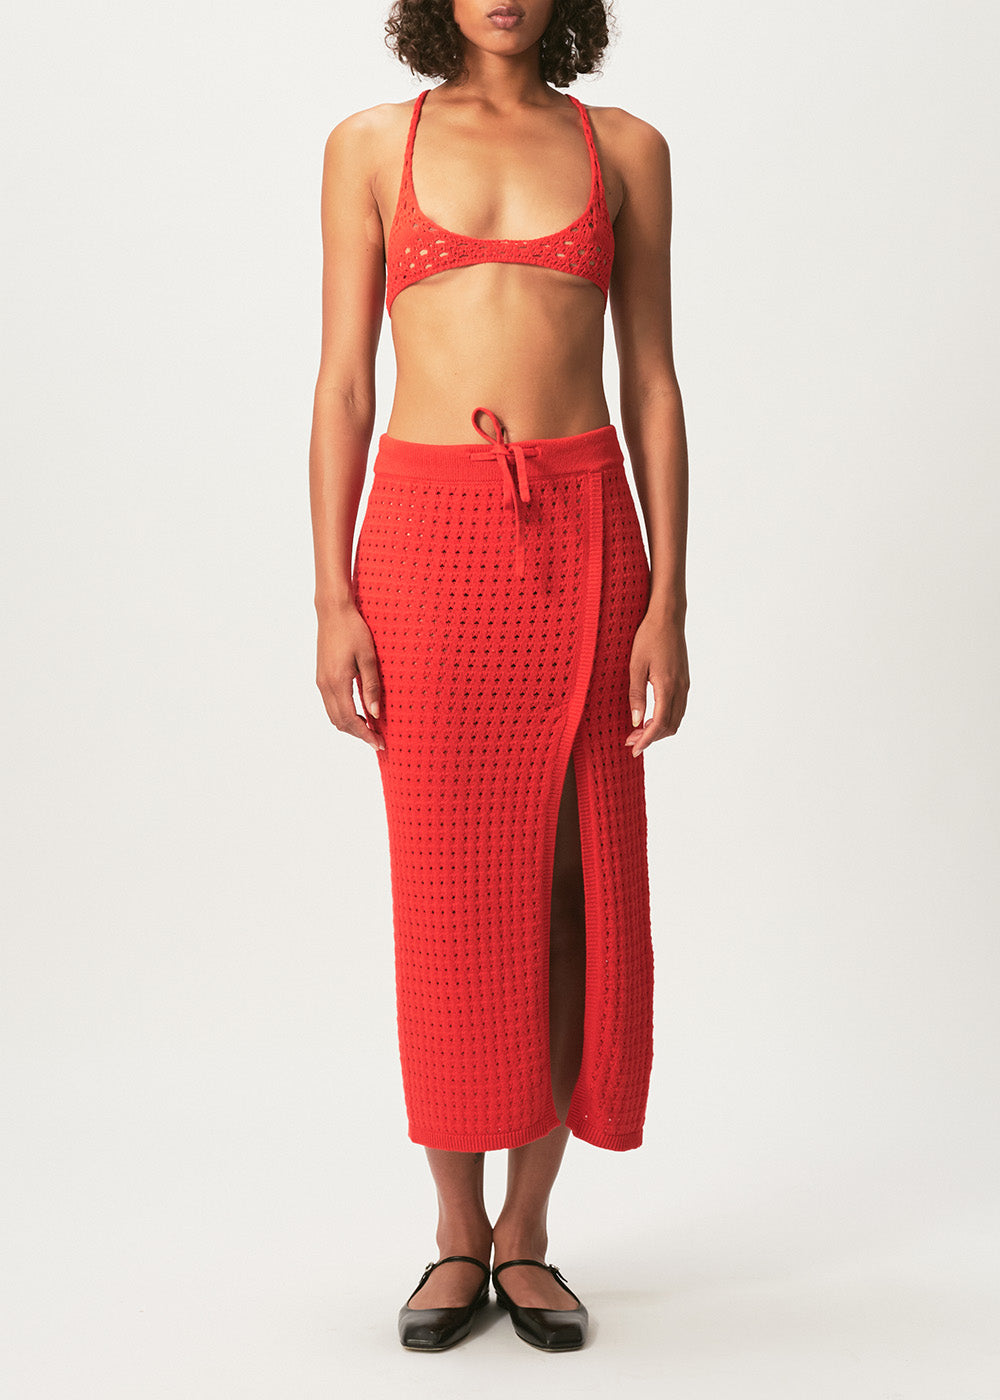 Mona Crochet Skirt - Small / Red